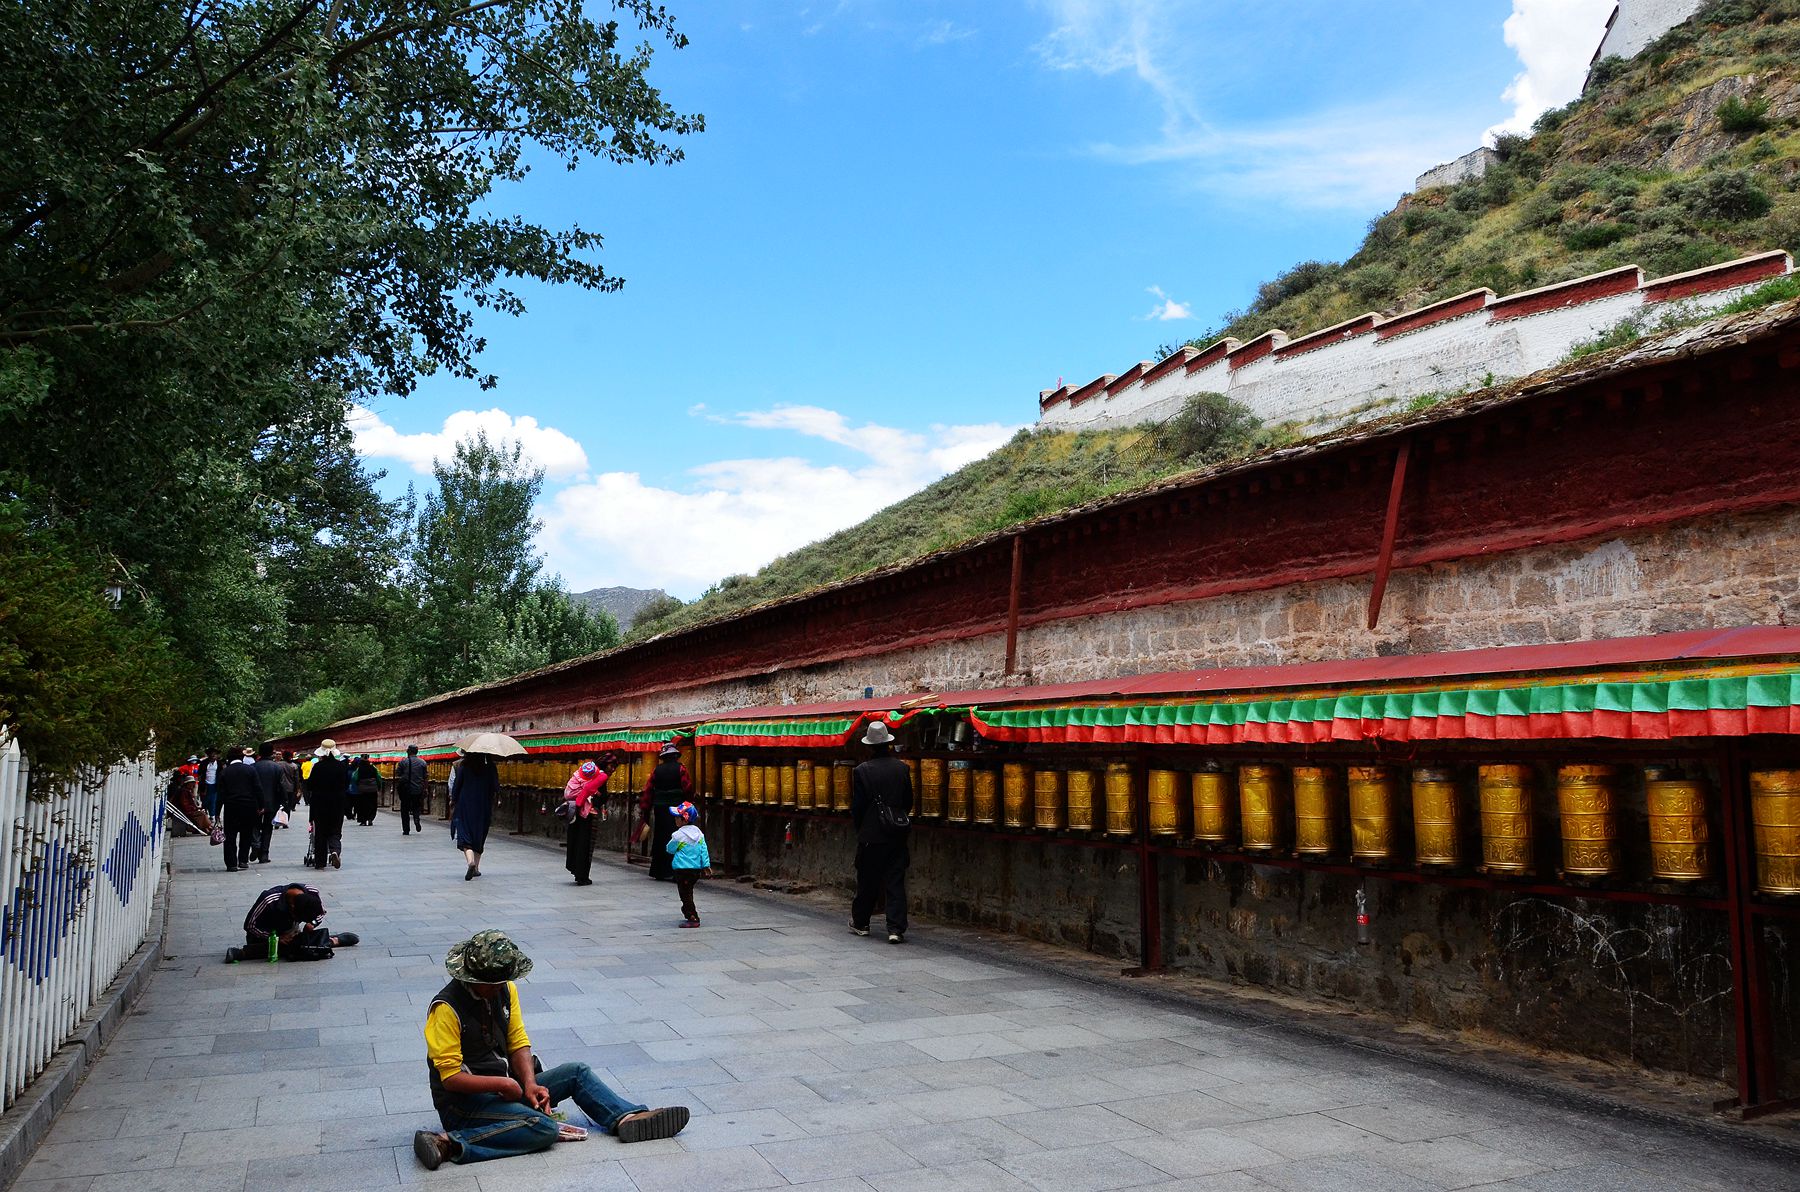 【西藏行】布达拉宫的转经筒 - 天府摄影 - 天府社区